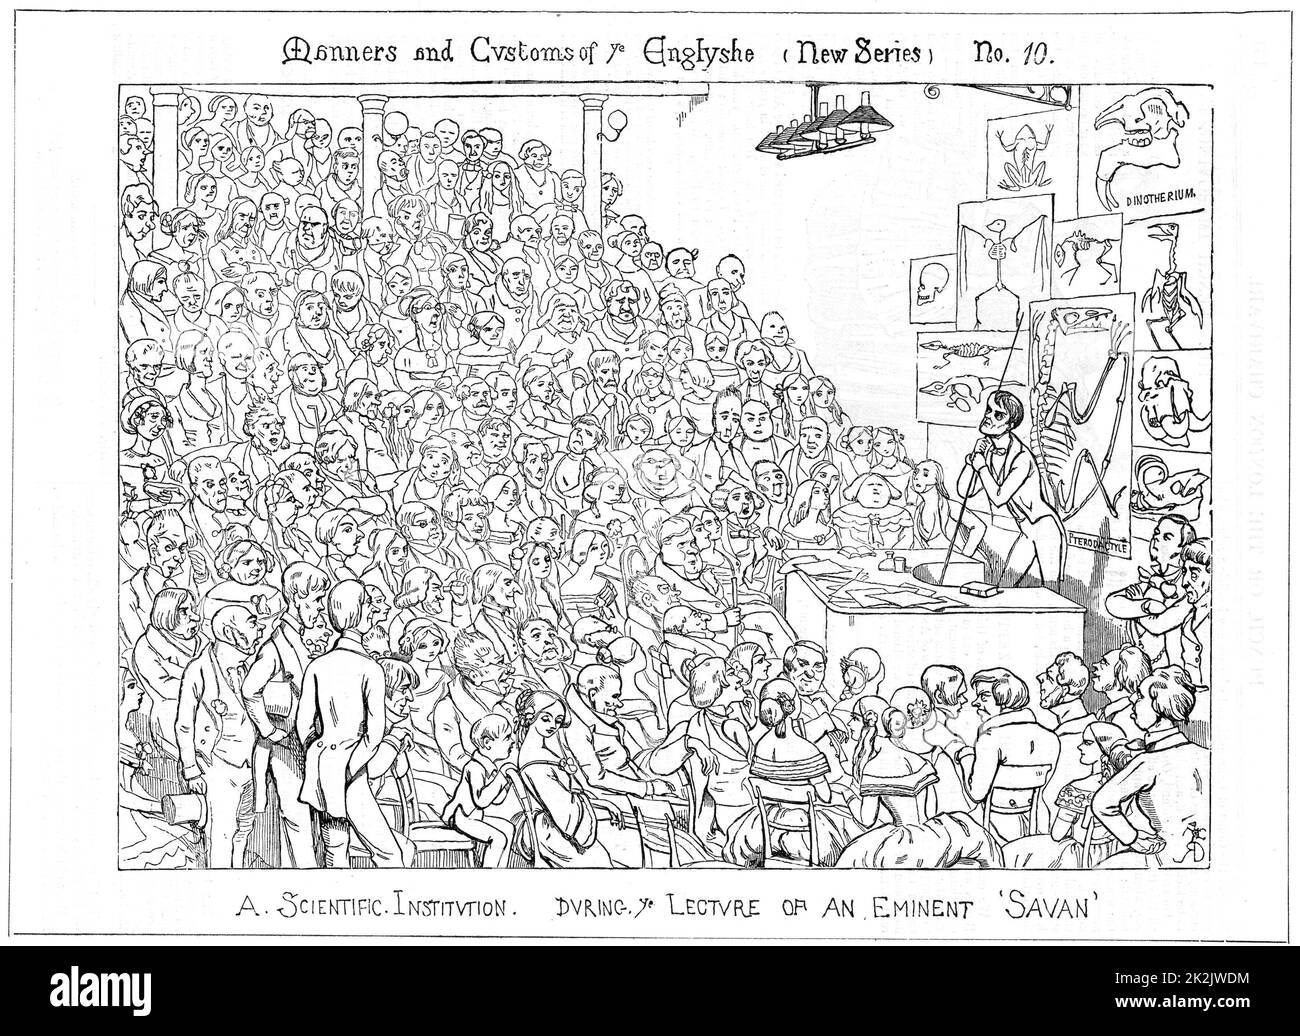 Richard Owen (1804-1892), britischer Naturforscher und Anatom, gibt einen Freitagabend-Diskurs über Fossilien in der Royal Institution, London. Karikatur von Richard Doyle aus 'Punch', London 1849. Holzstich Stockfoto